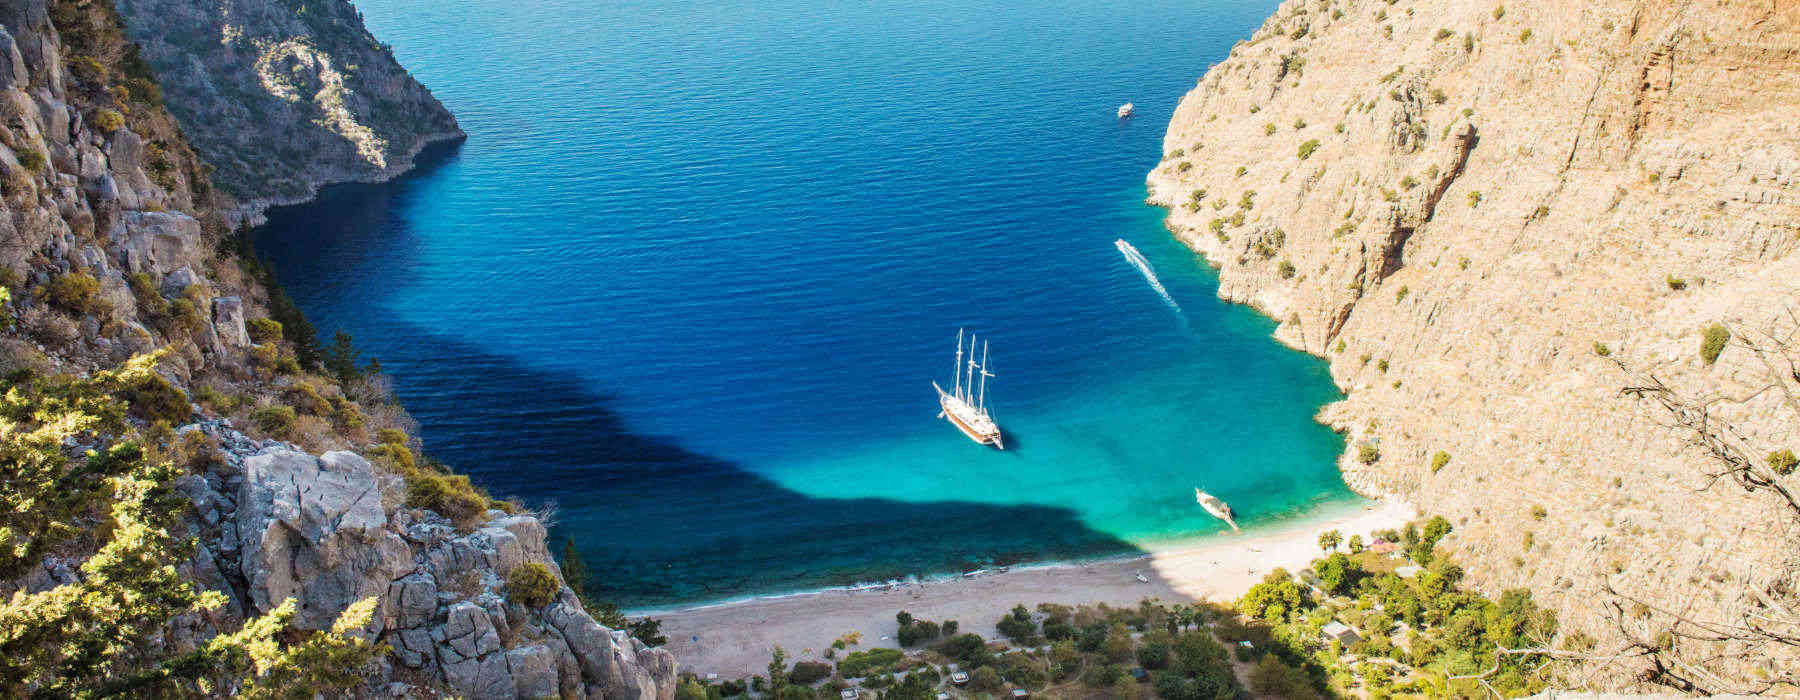 Aegean Coast<br class="hidden-md hidden-lg" /> Holidays